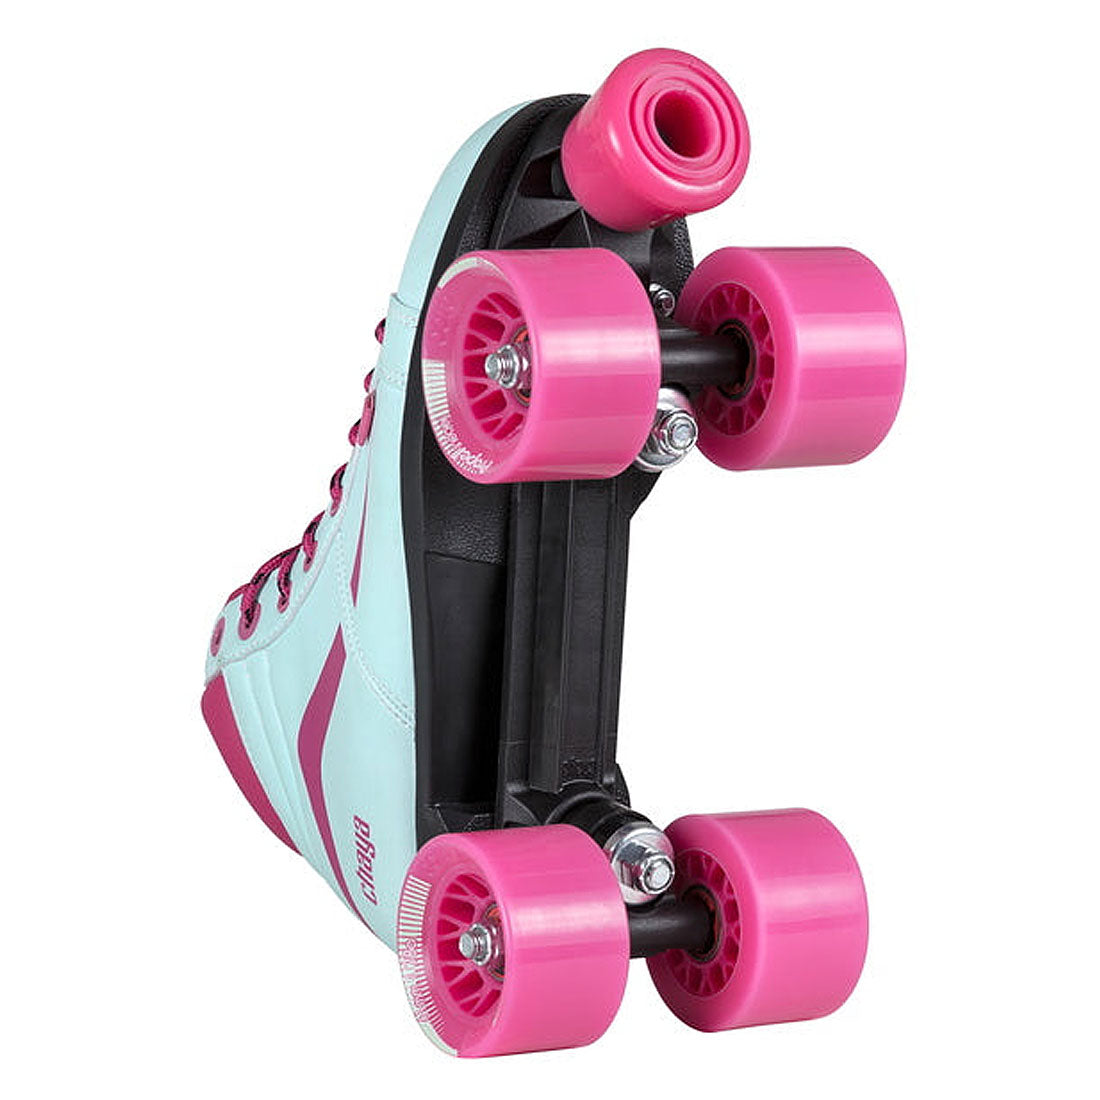 Chaya Glide Skate - Turquoise Roller Skates